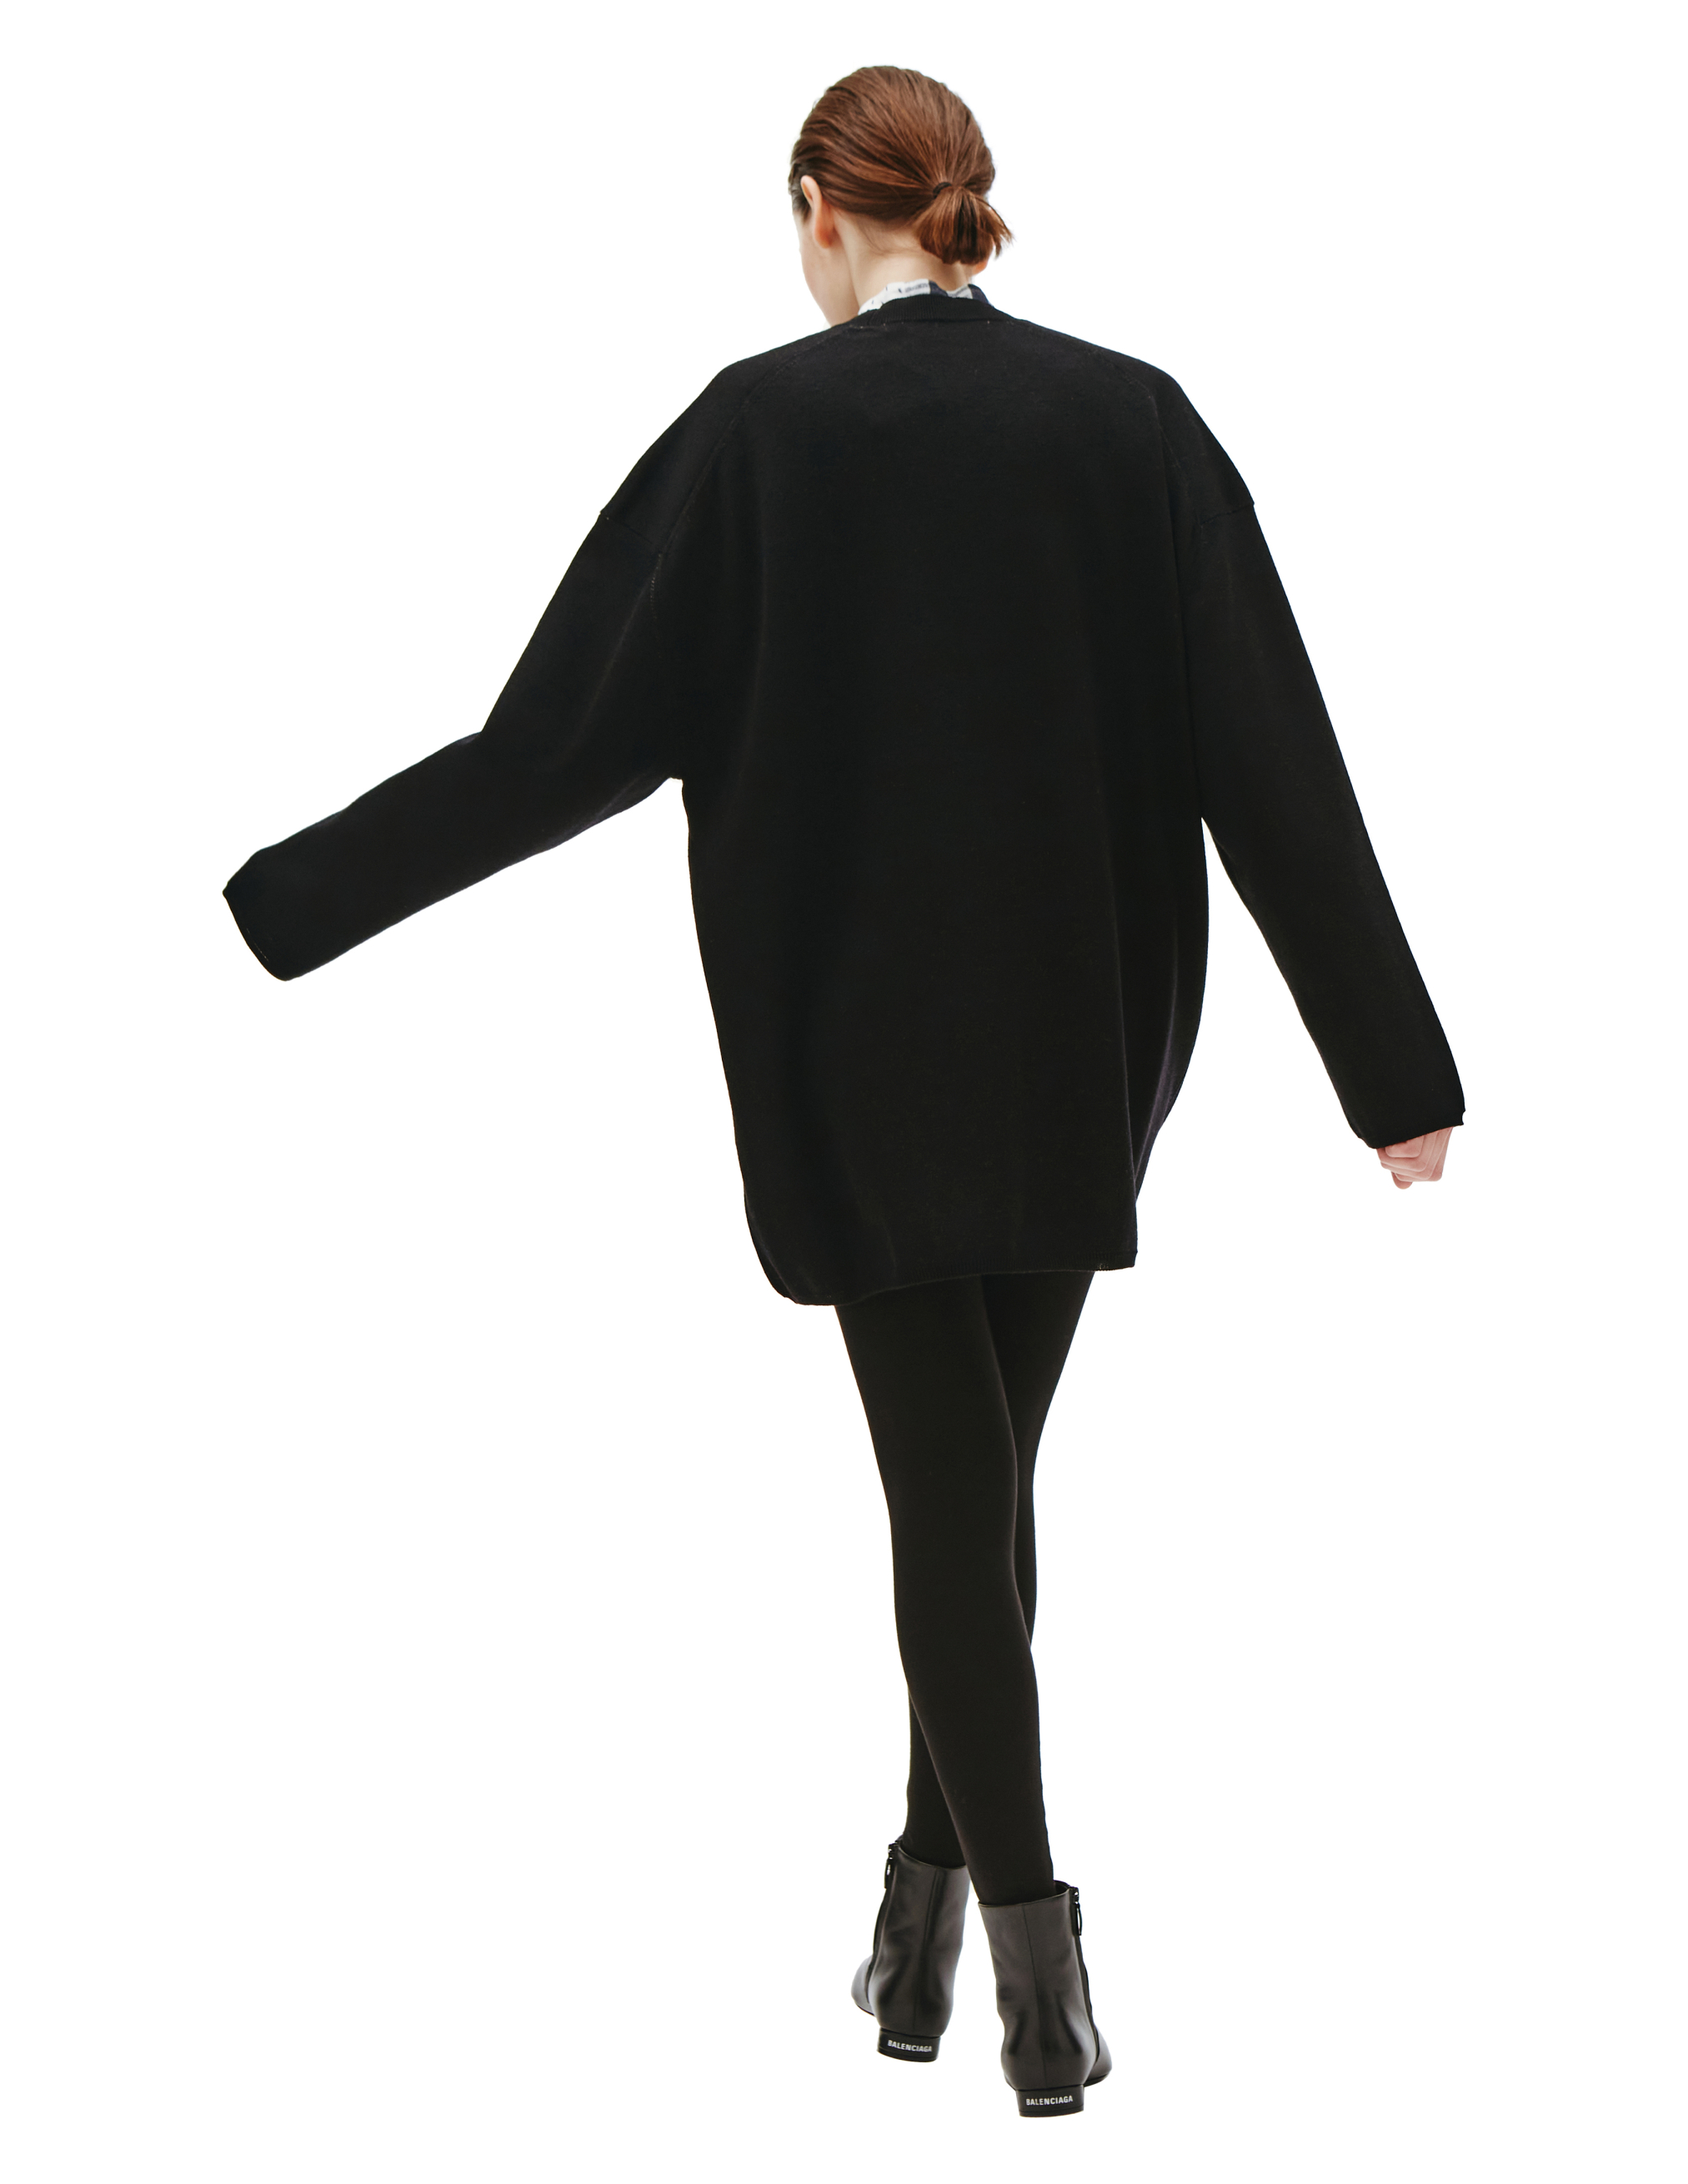 Шерстяной свитер с контрастным логотипом Comme des Garcons GI-N017-051-1, размер S;M - фото 3